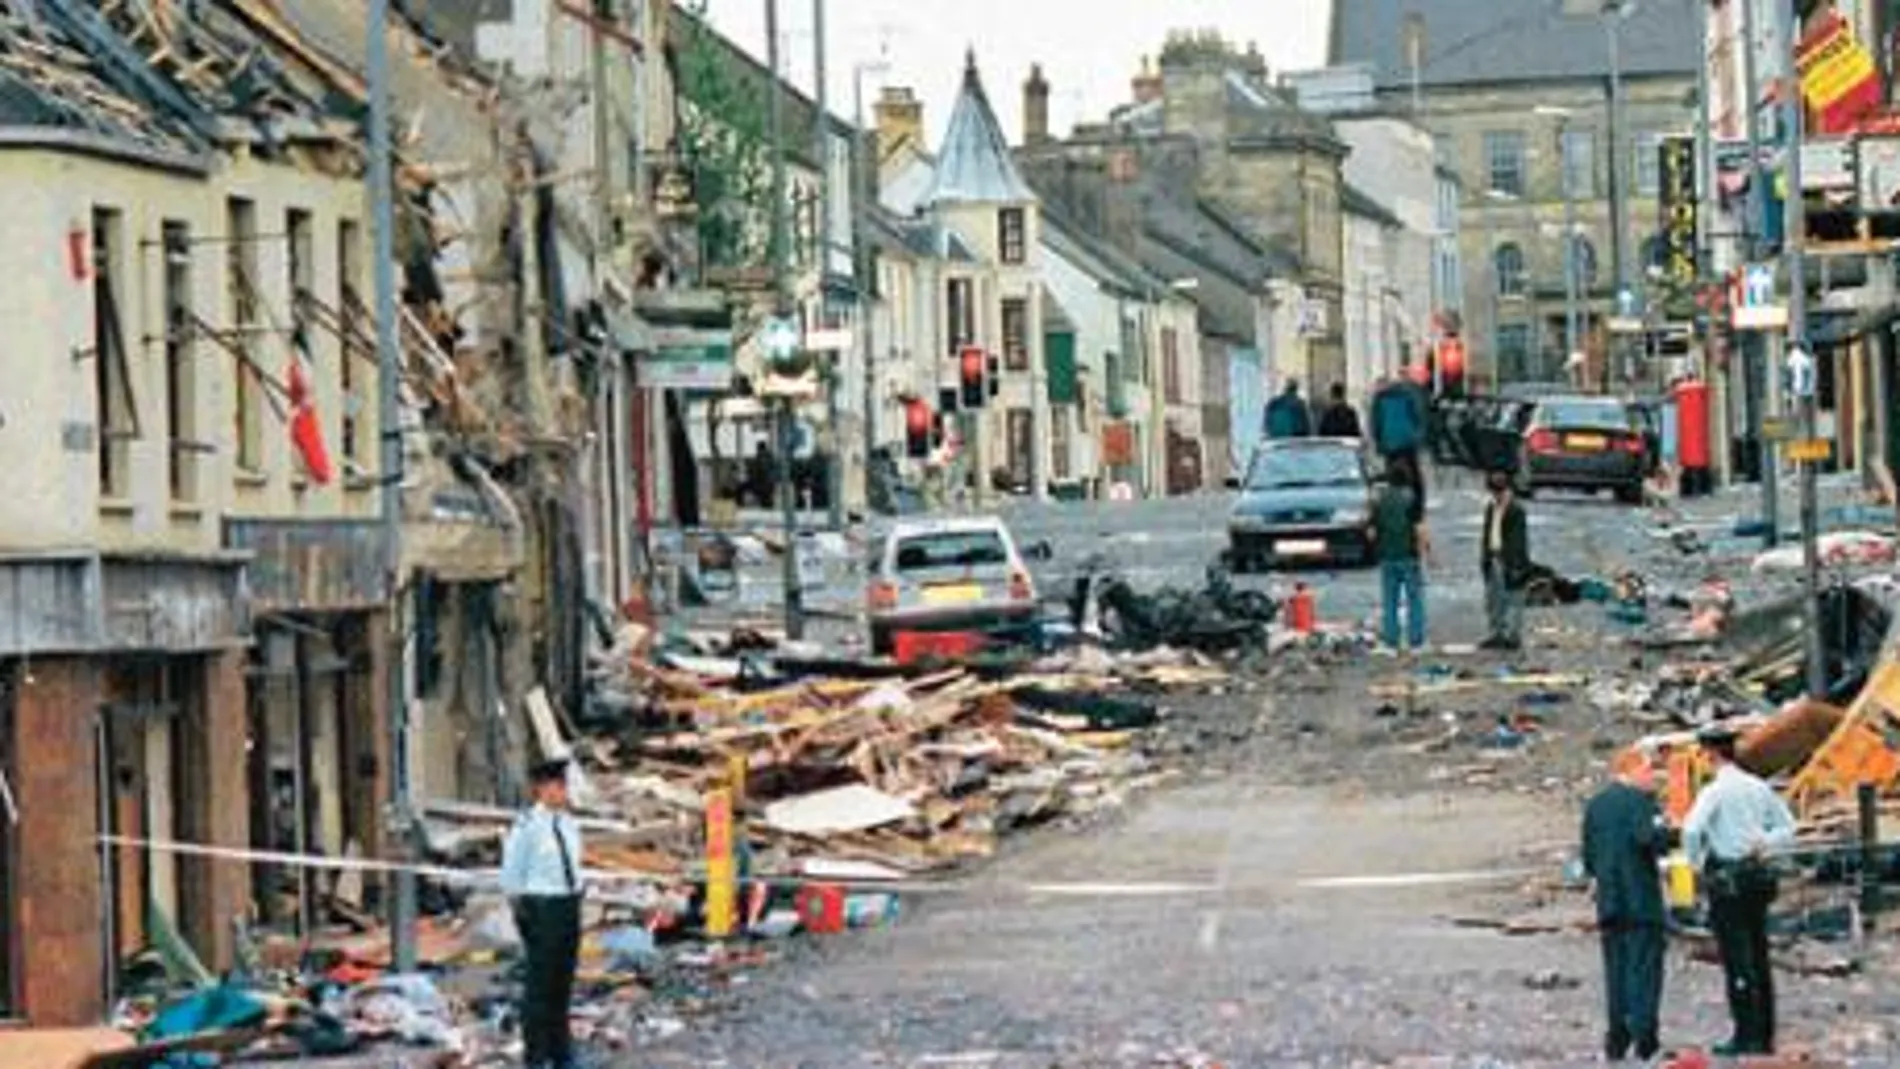 Justicia en Omagh diez años después